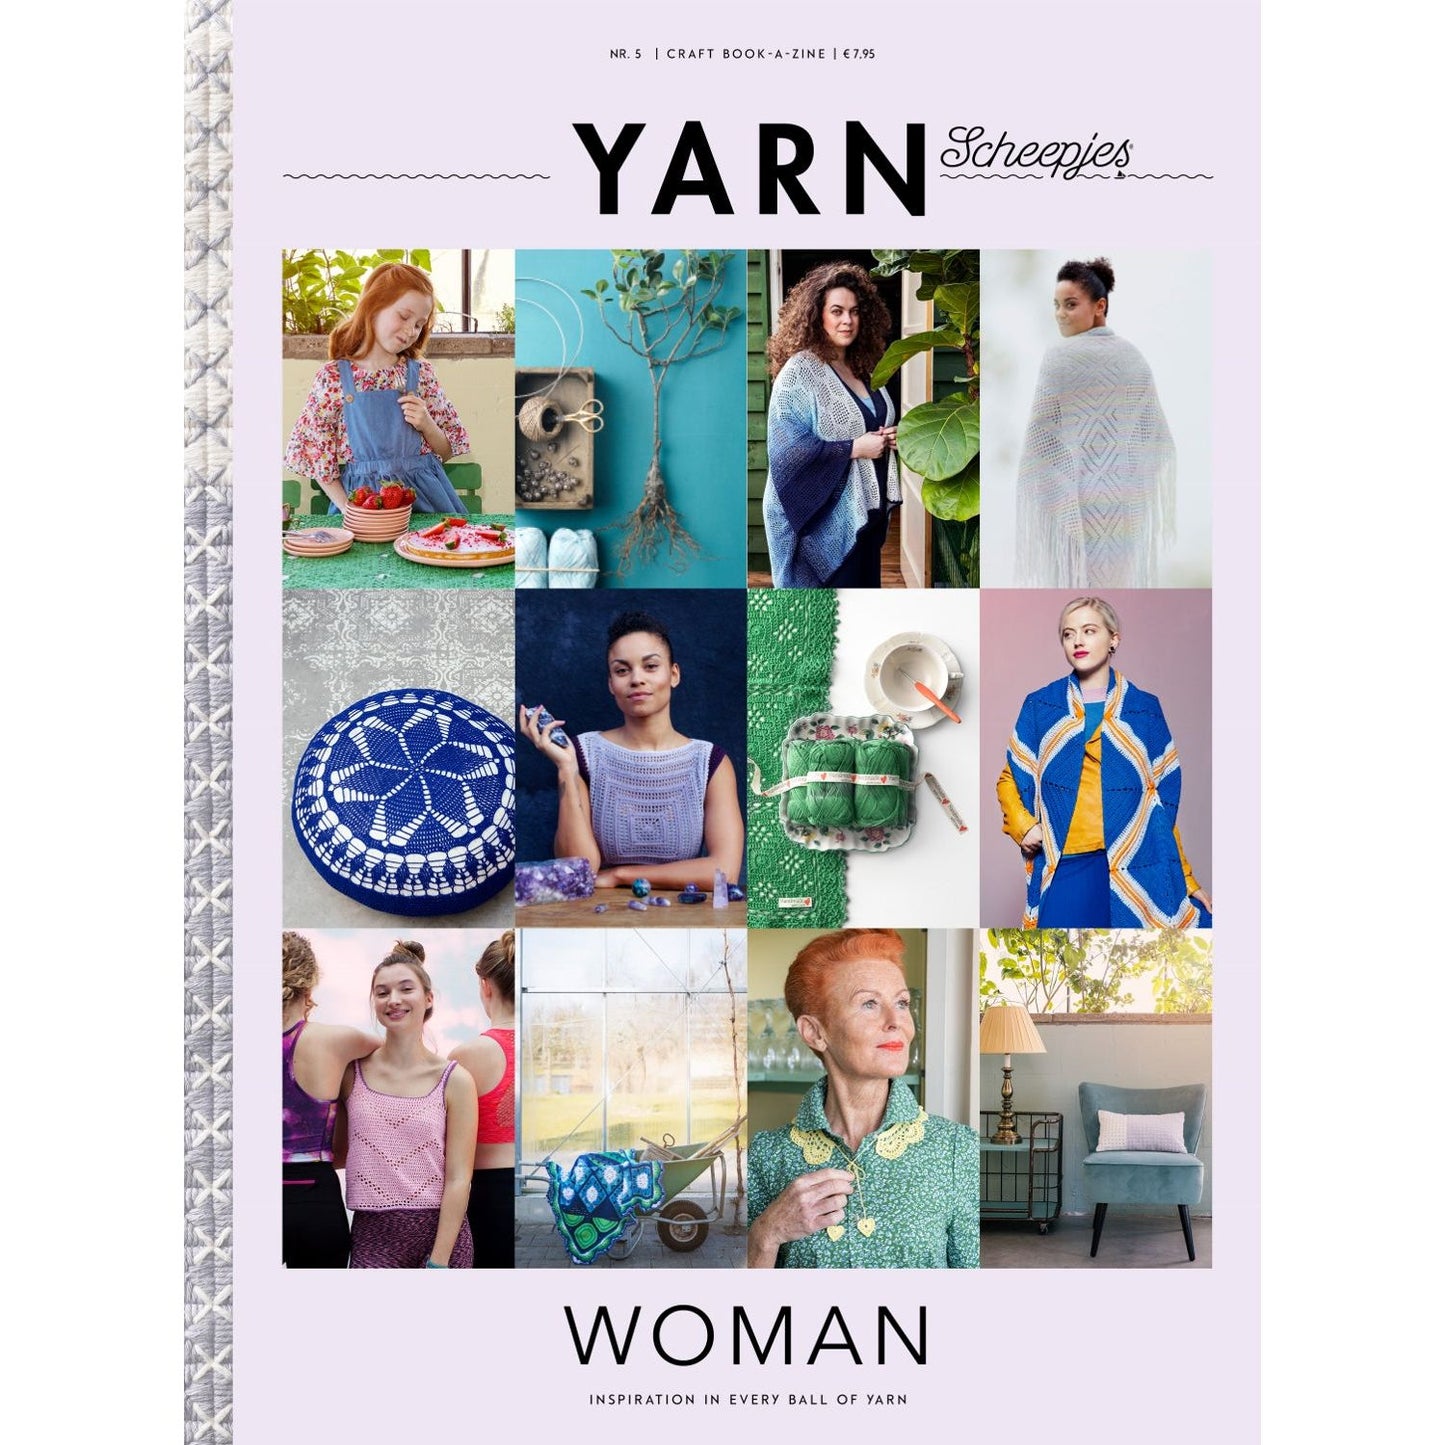 Scheepjes YARN Book-a-zine: Woman Edition